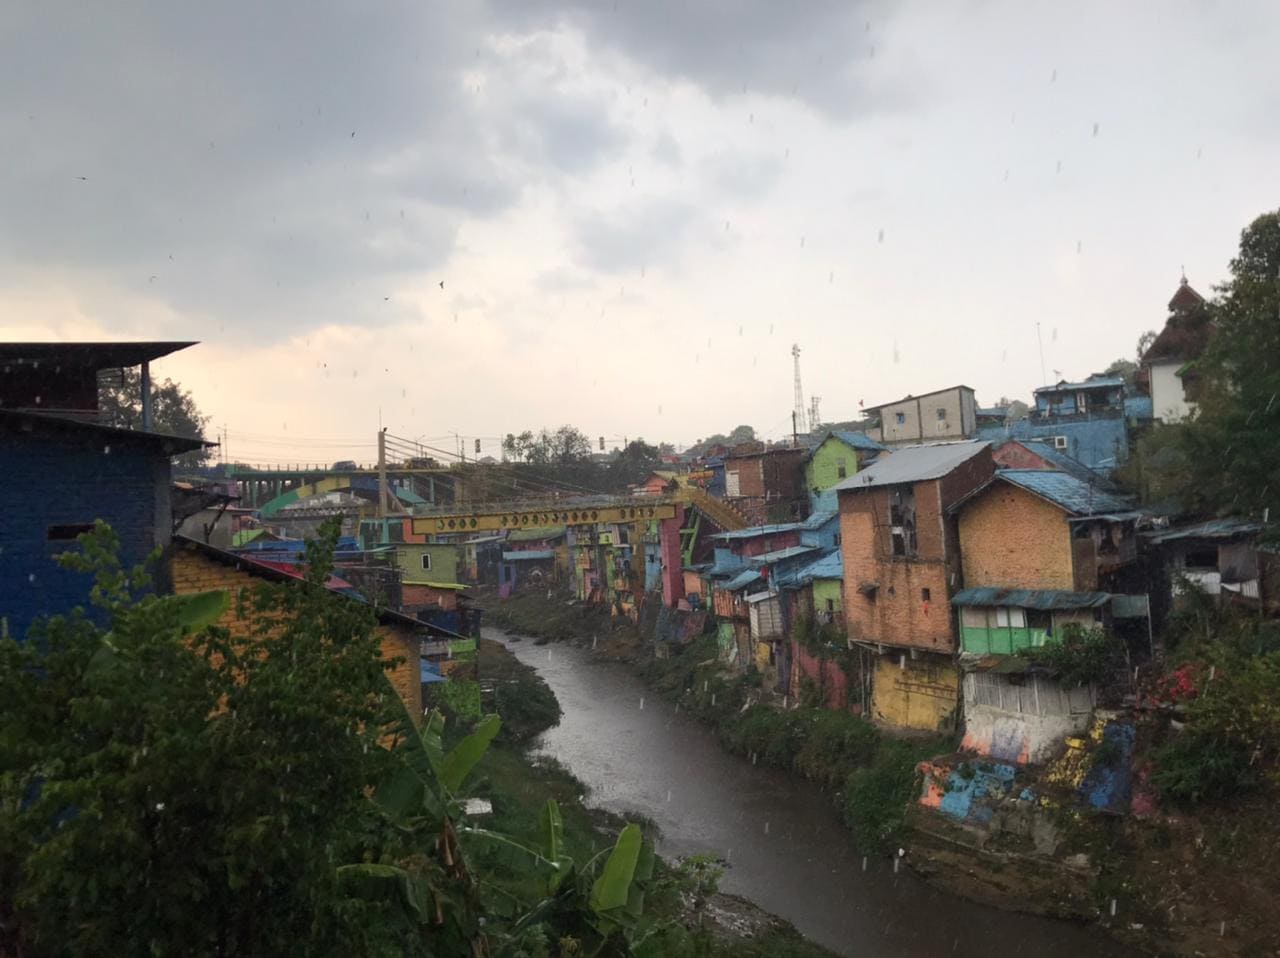 Wisata Kampung Warna-Warni Jodipan.